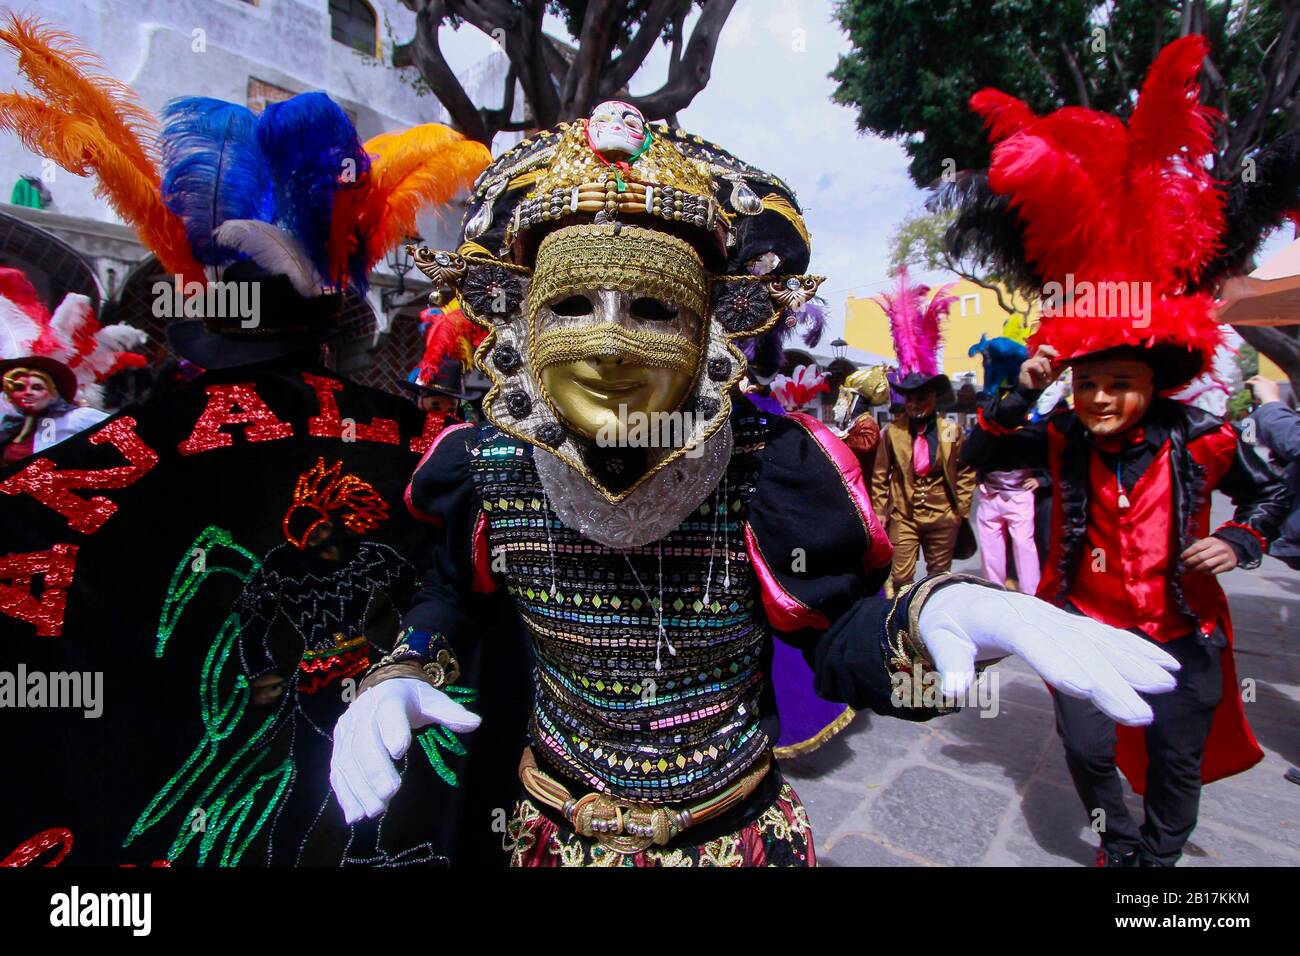 Huehues Mexiko, Tänzerin, die ein traditionelles mexikanisches Folkkostüm trägt und farbenprächtig maskiert ist. Karnevalsszene. Mexikanischer Karneval Stockfoto